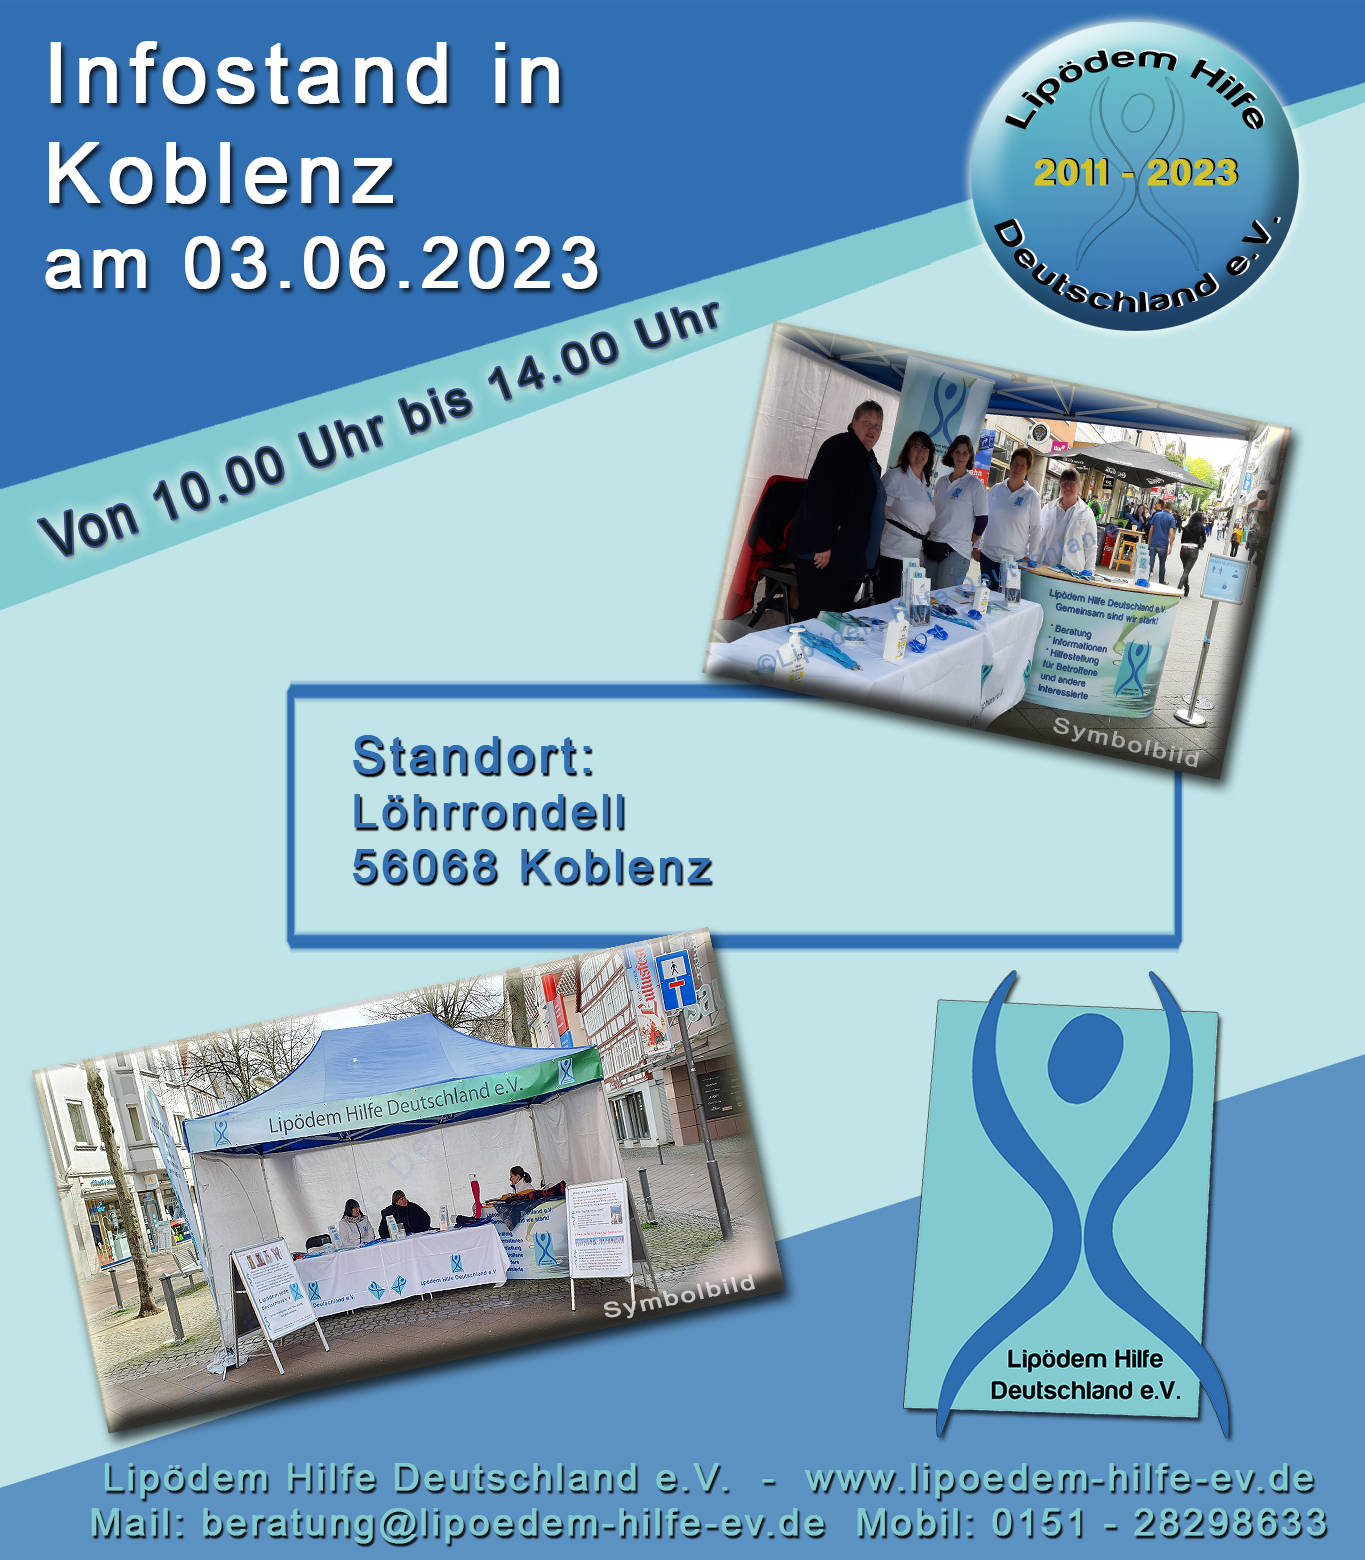 03.06.2023 - Infostand Koblenz - Löhrrondell - 56068 Koblenz